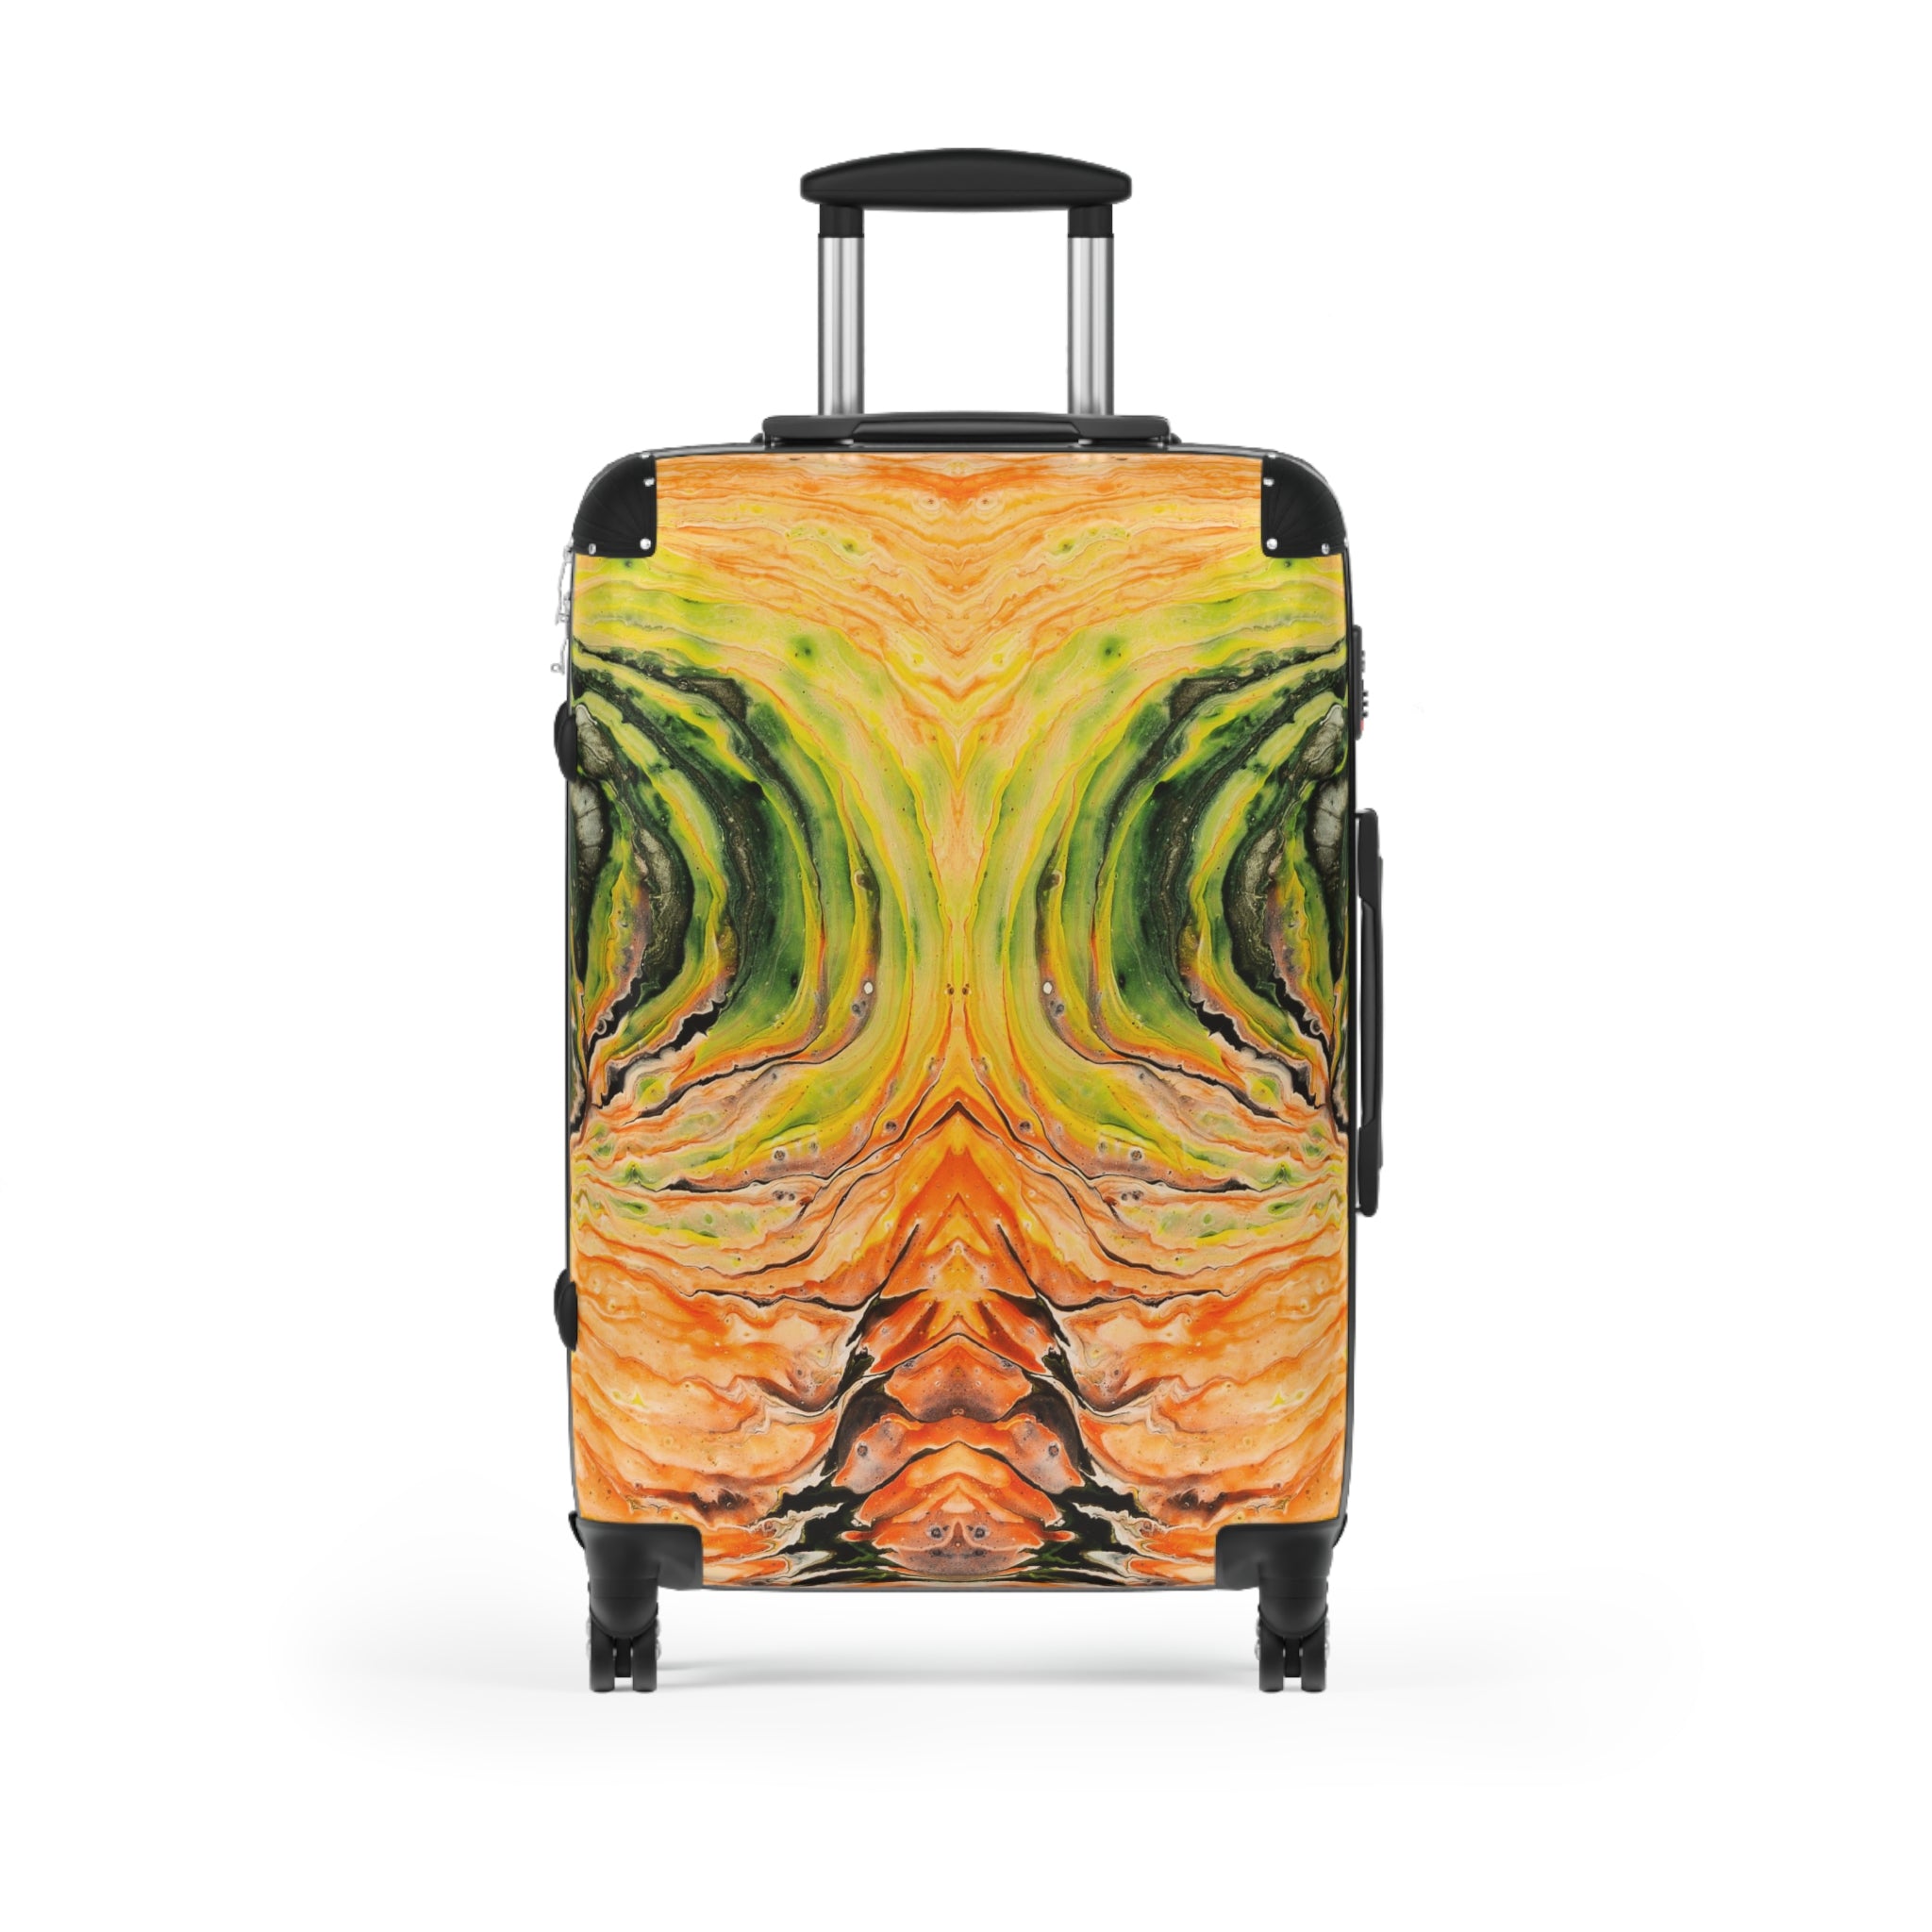 Suitcase - Vortex Of Fire